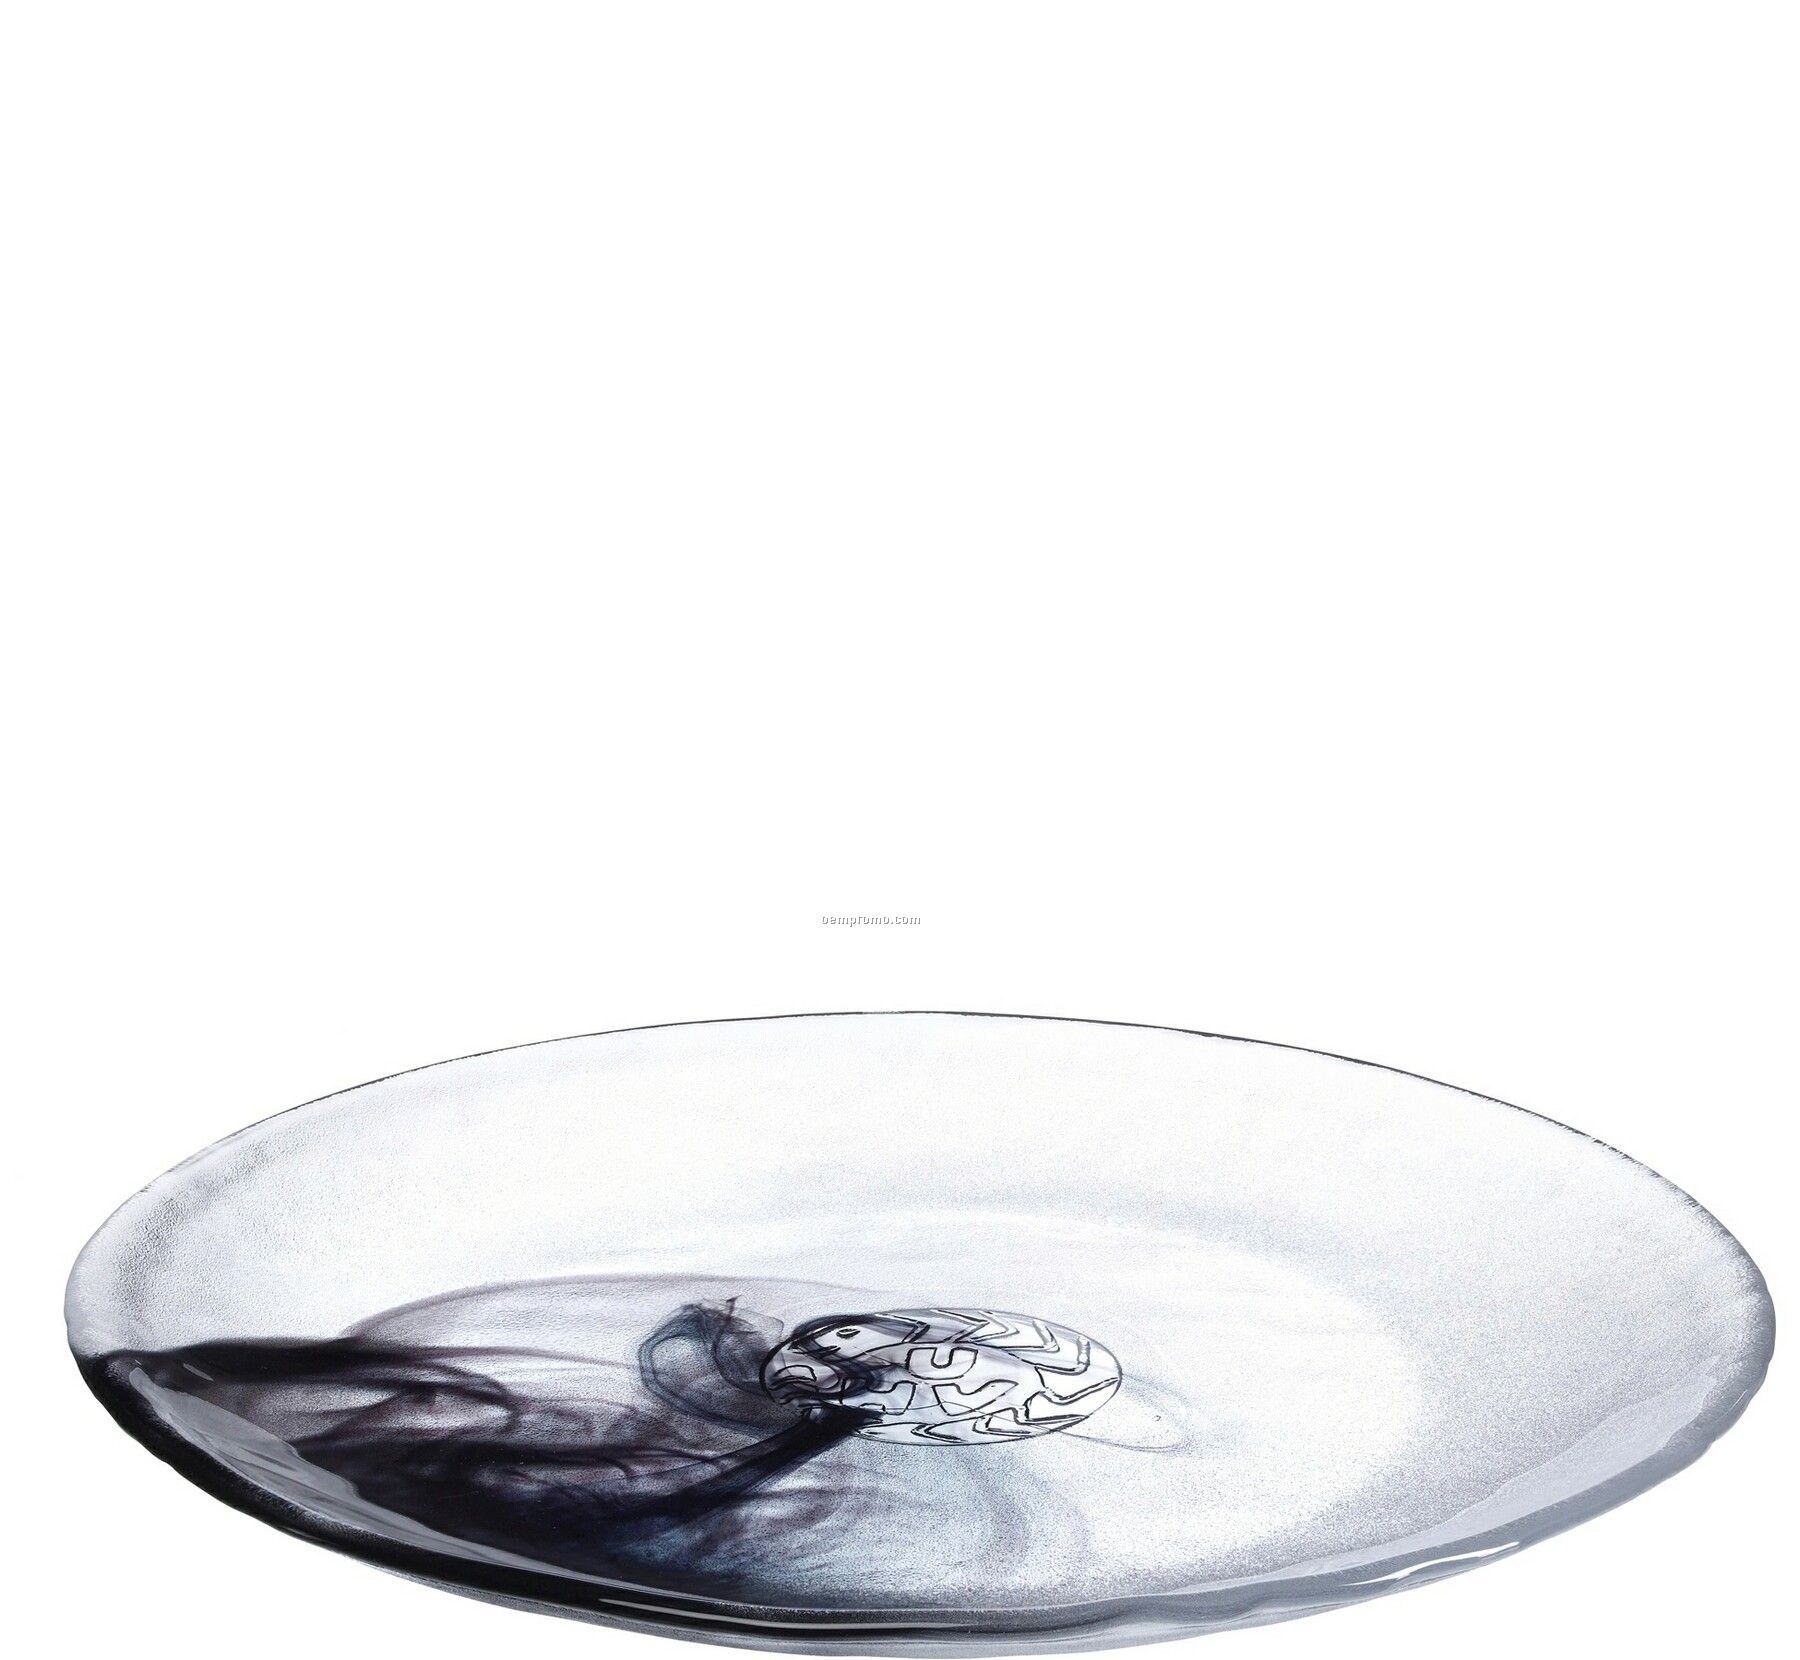 Mine Glass Dish By Ulrica Hydman-vallien